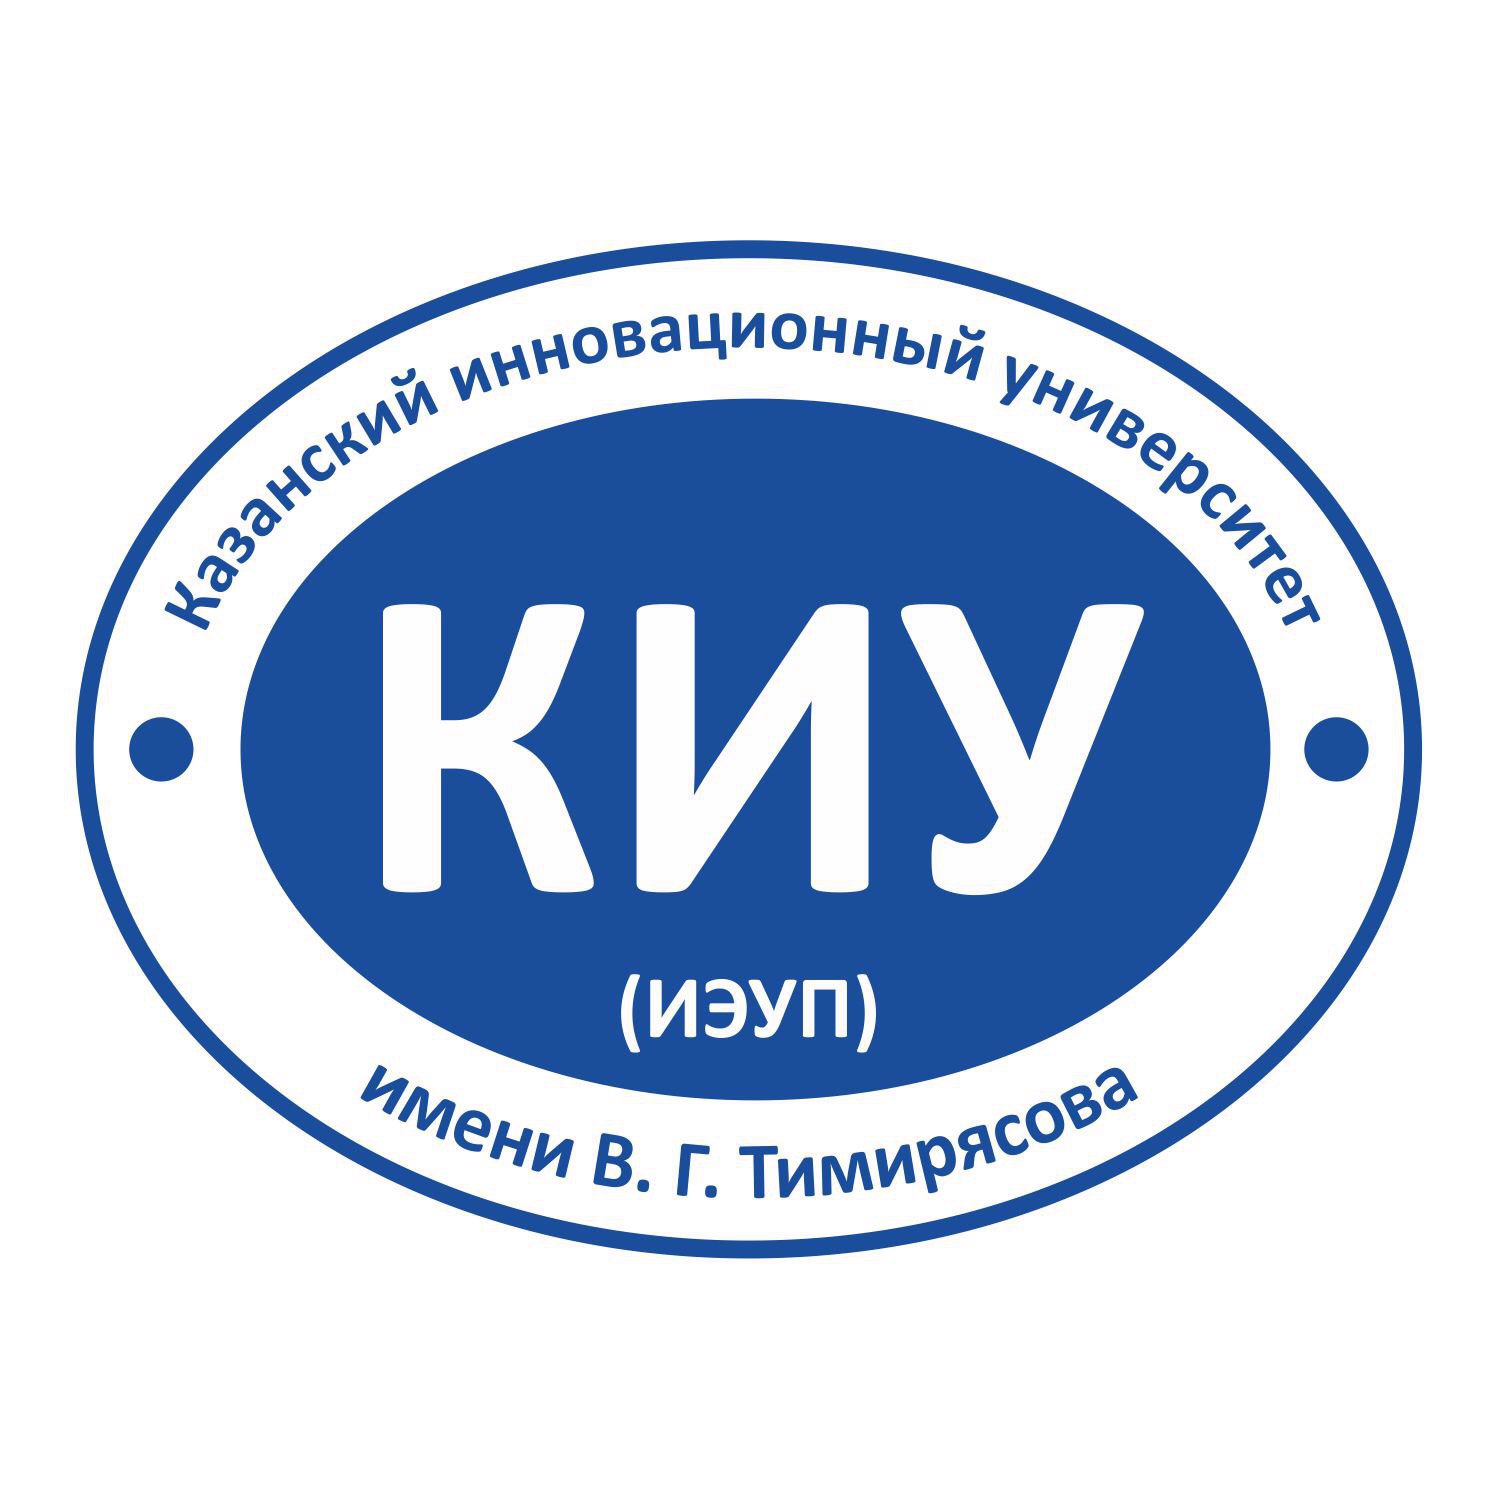 Логотип (Казанский инновационный университет имени Виталия Гайнулловича Тимирясова)